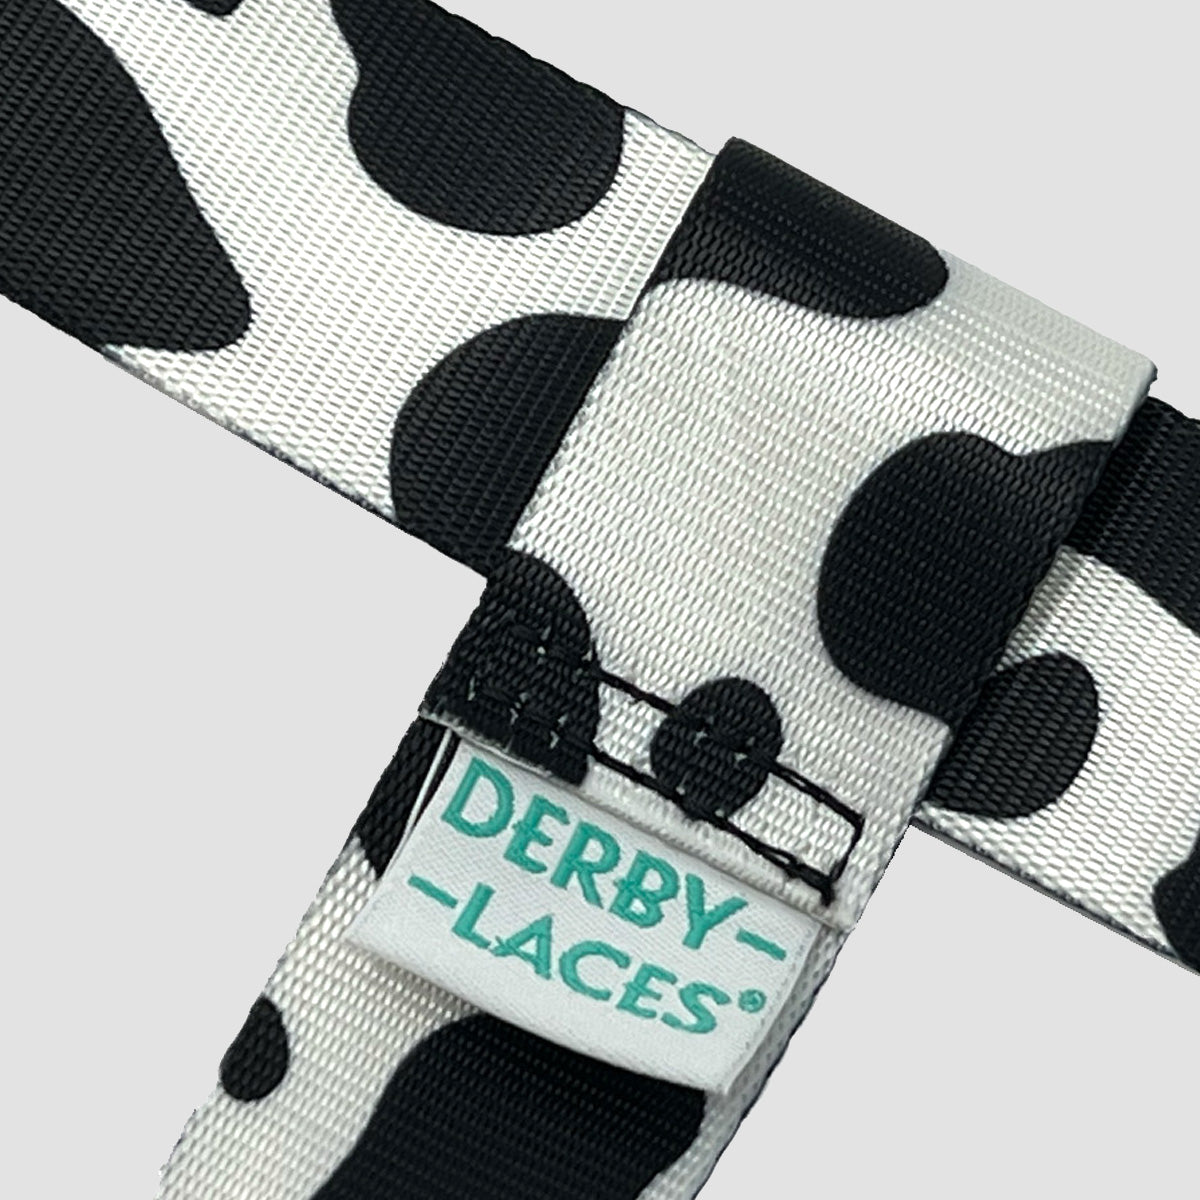 Derby Laces Skate Strap - Gear Leash Cow 198cm